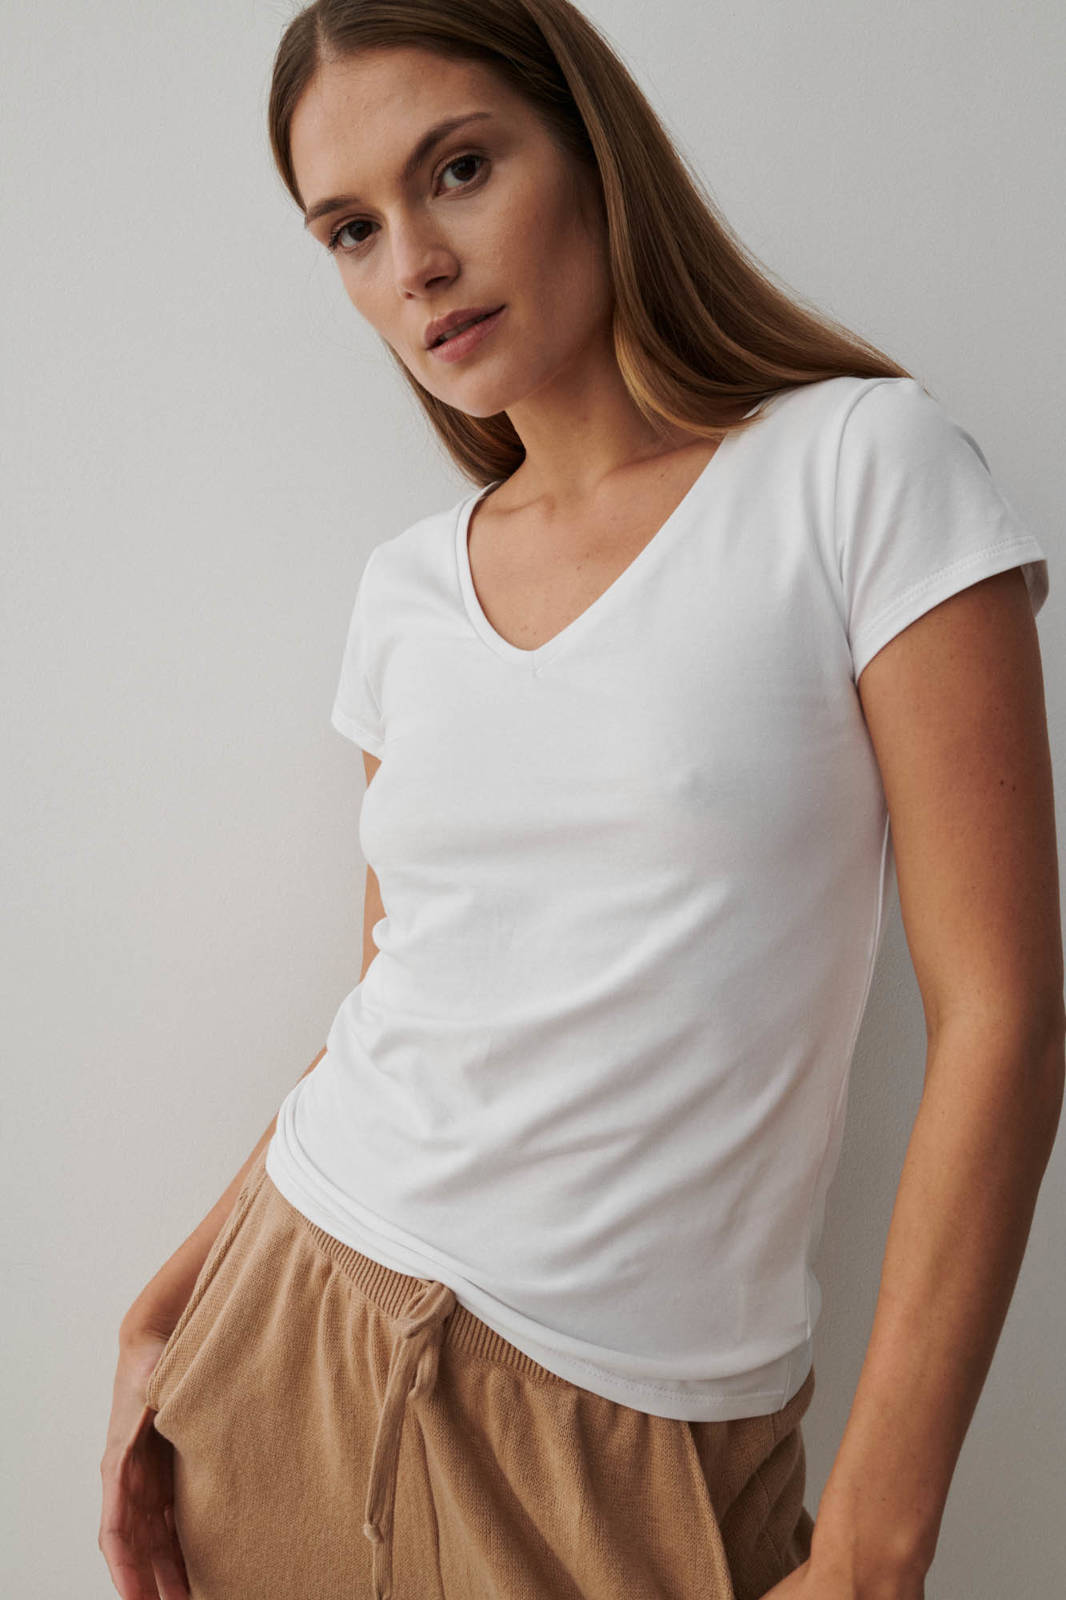 White V-neck T-shirt